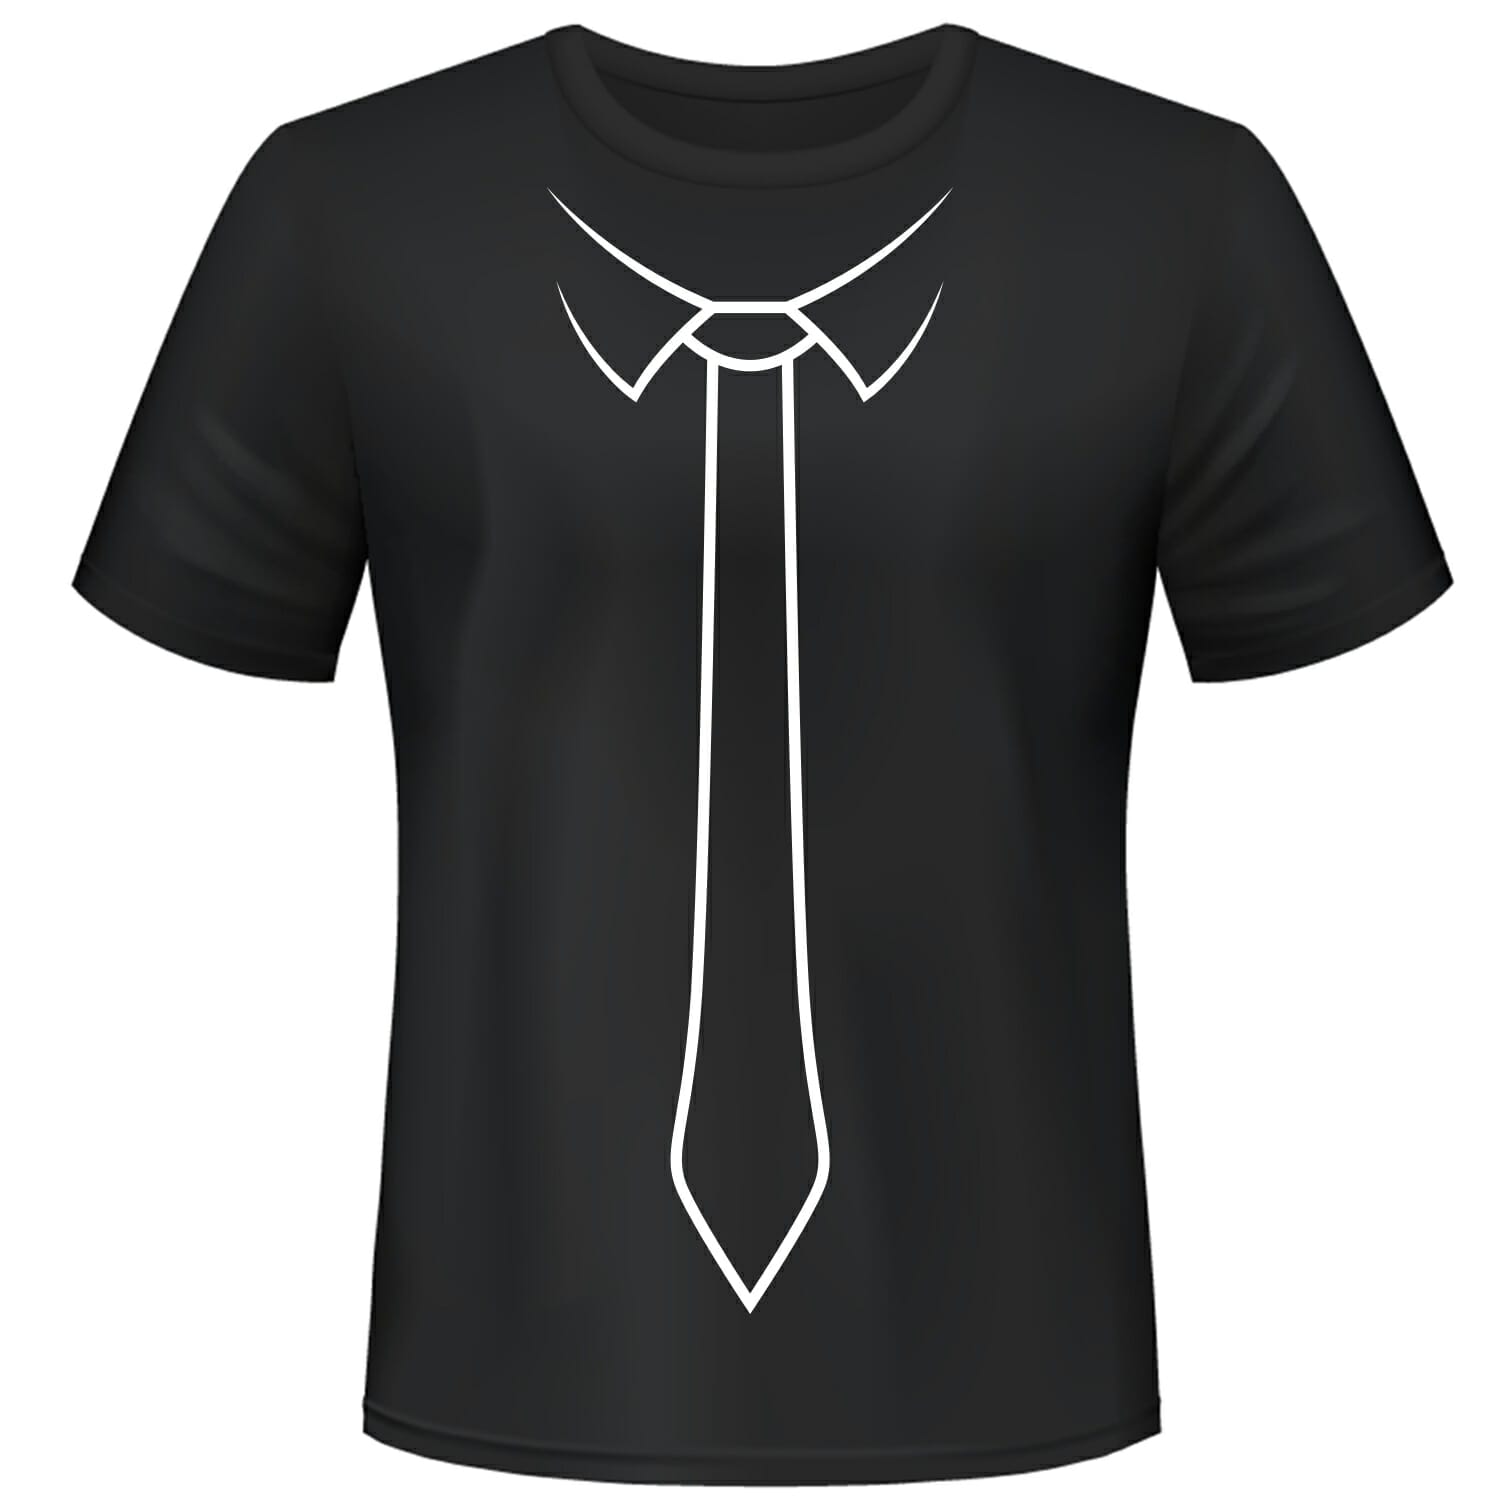 next tie tshirt design